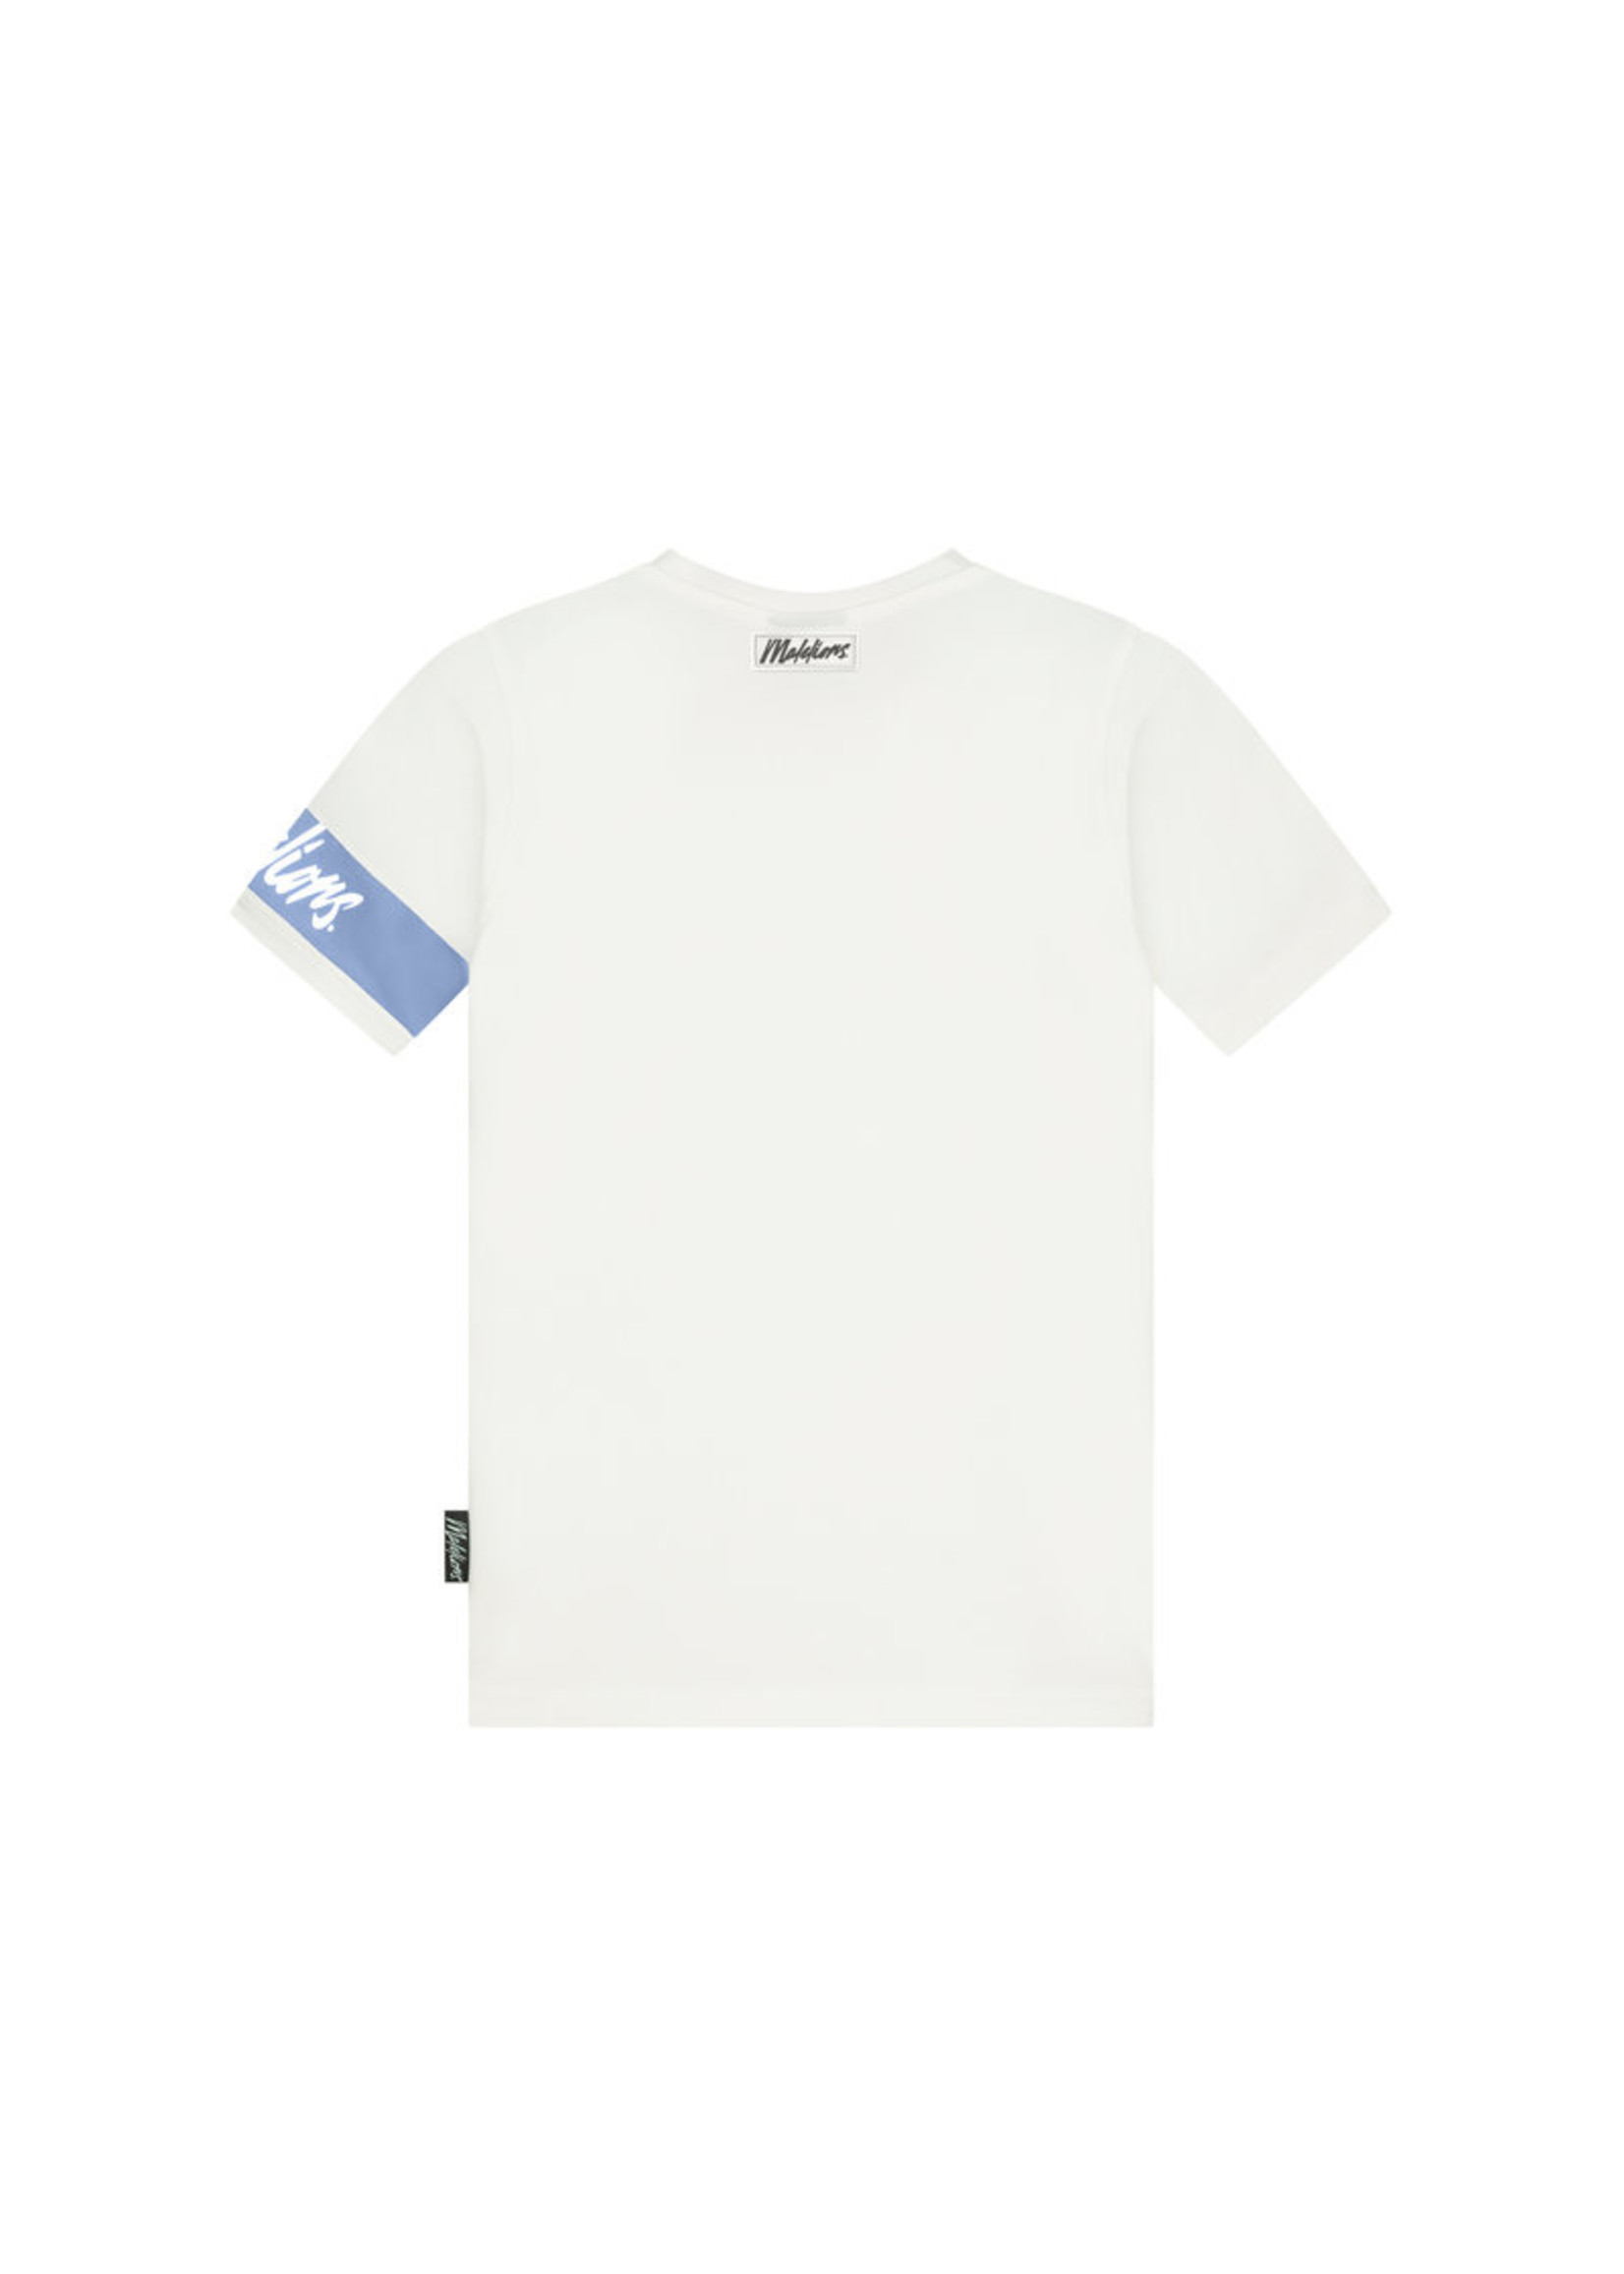 Malelions T-Shirt Off-white/Vista Blue